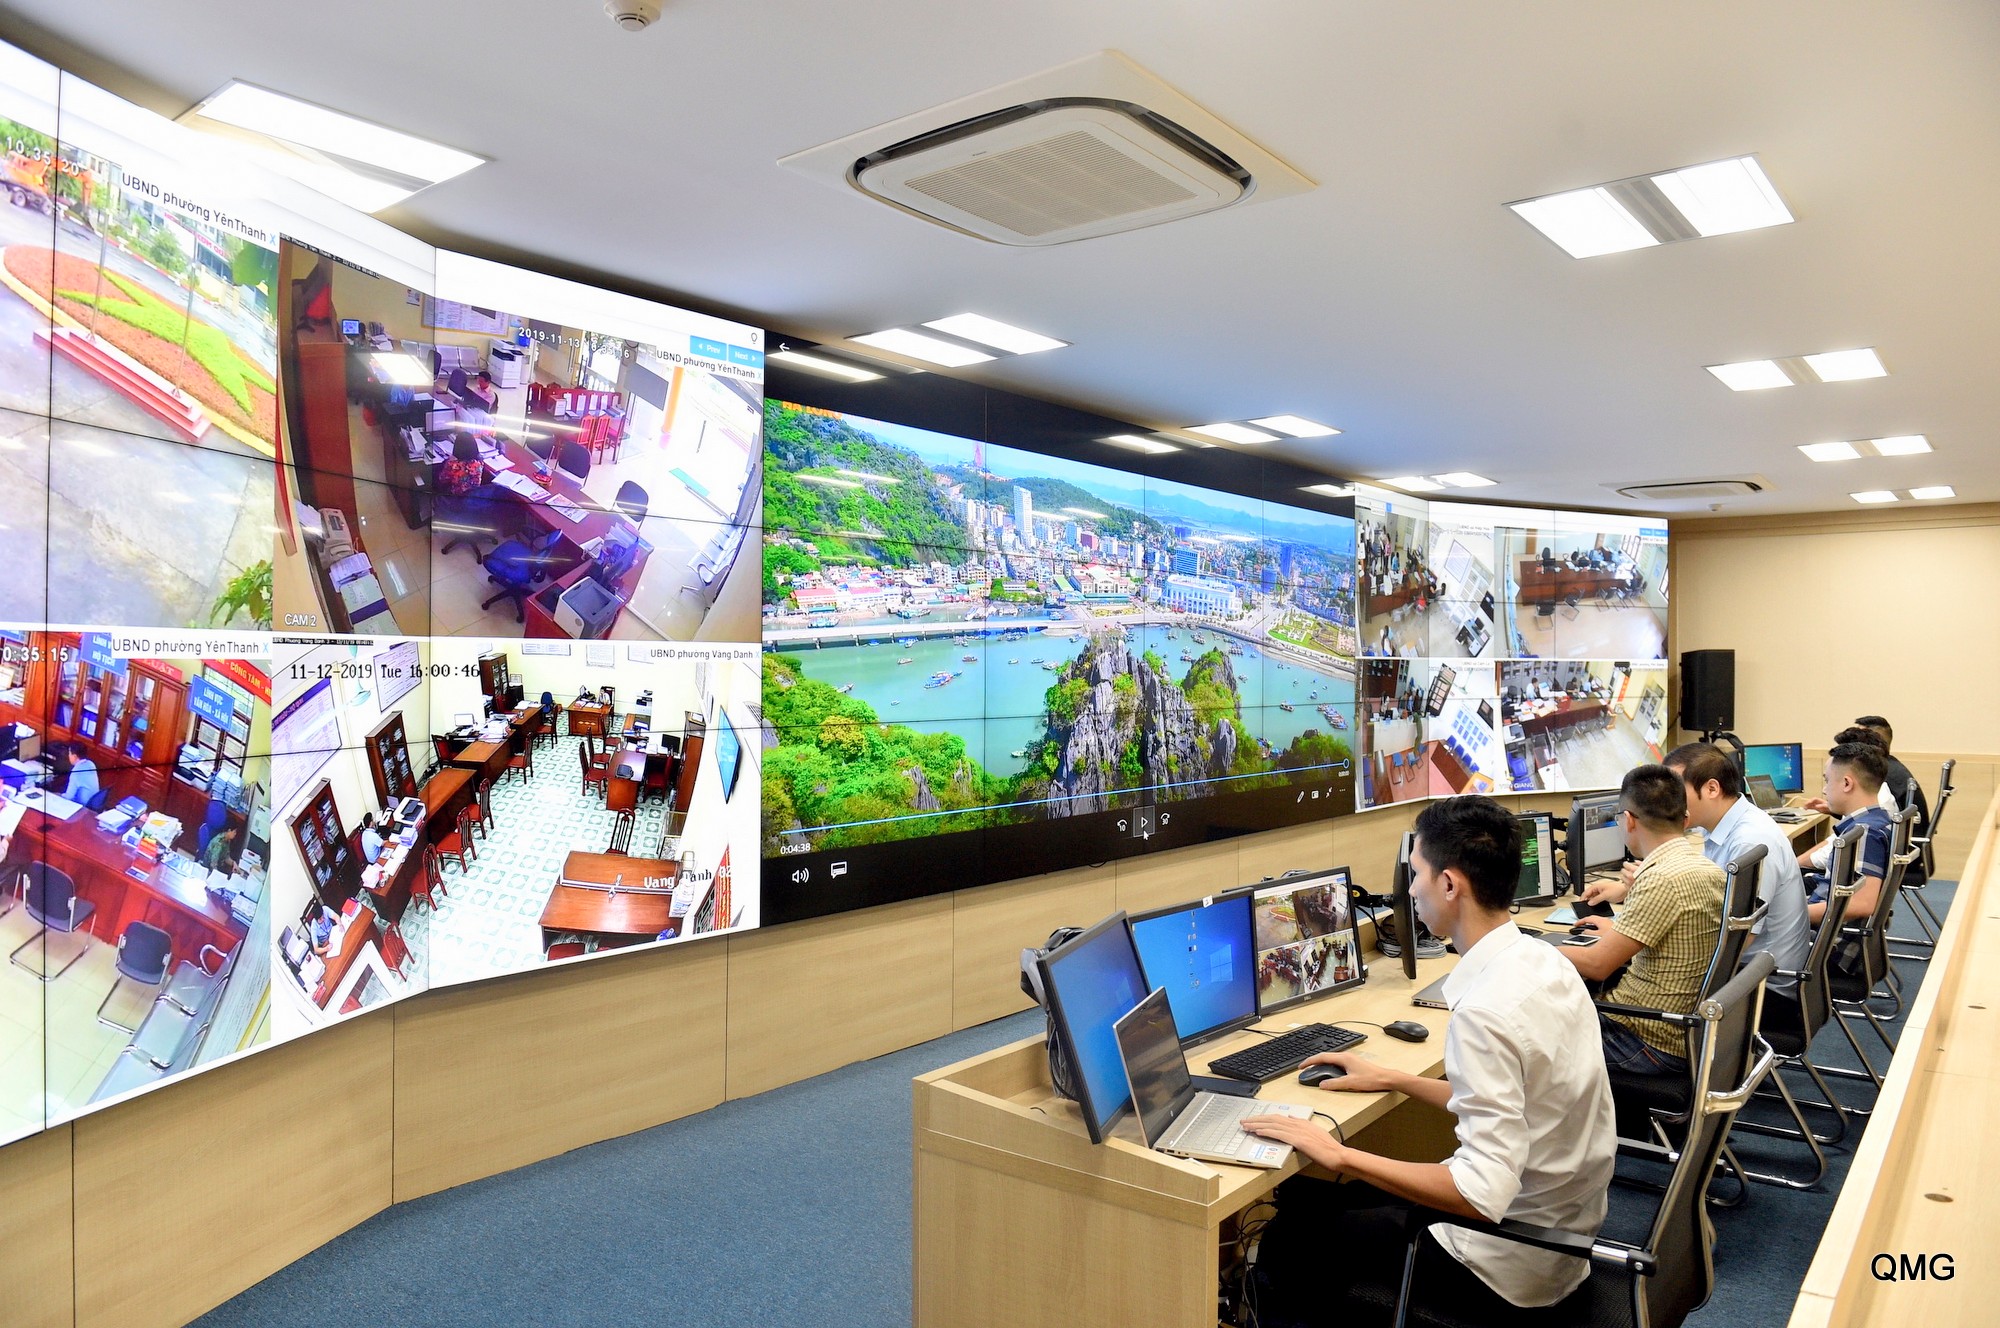 Trung tâm Điều hành thành phố thông minh là một trong những minh chứng rõ nét nhất cho quyết tâm và vị thế dẫn đầu của tỉnh Quảng Ninh trong 